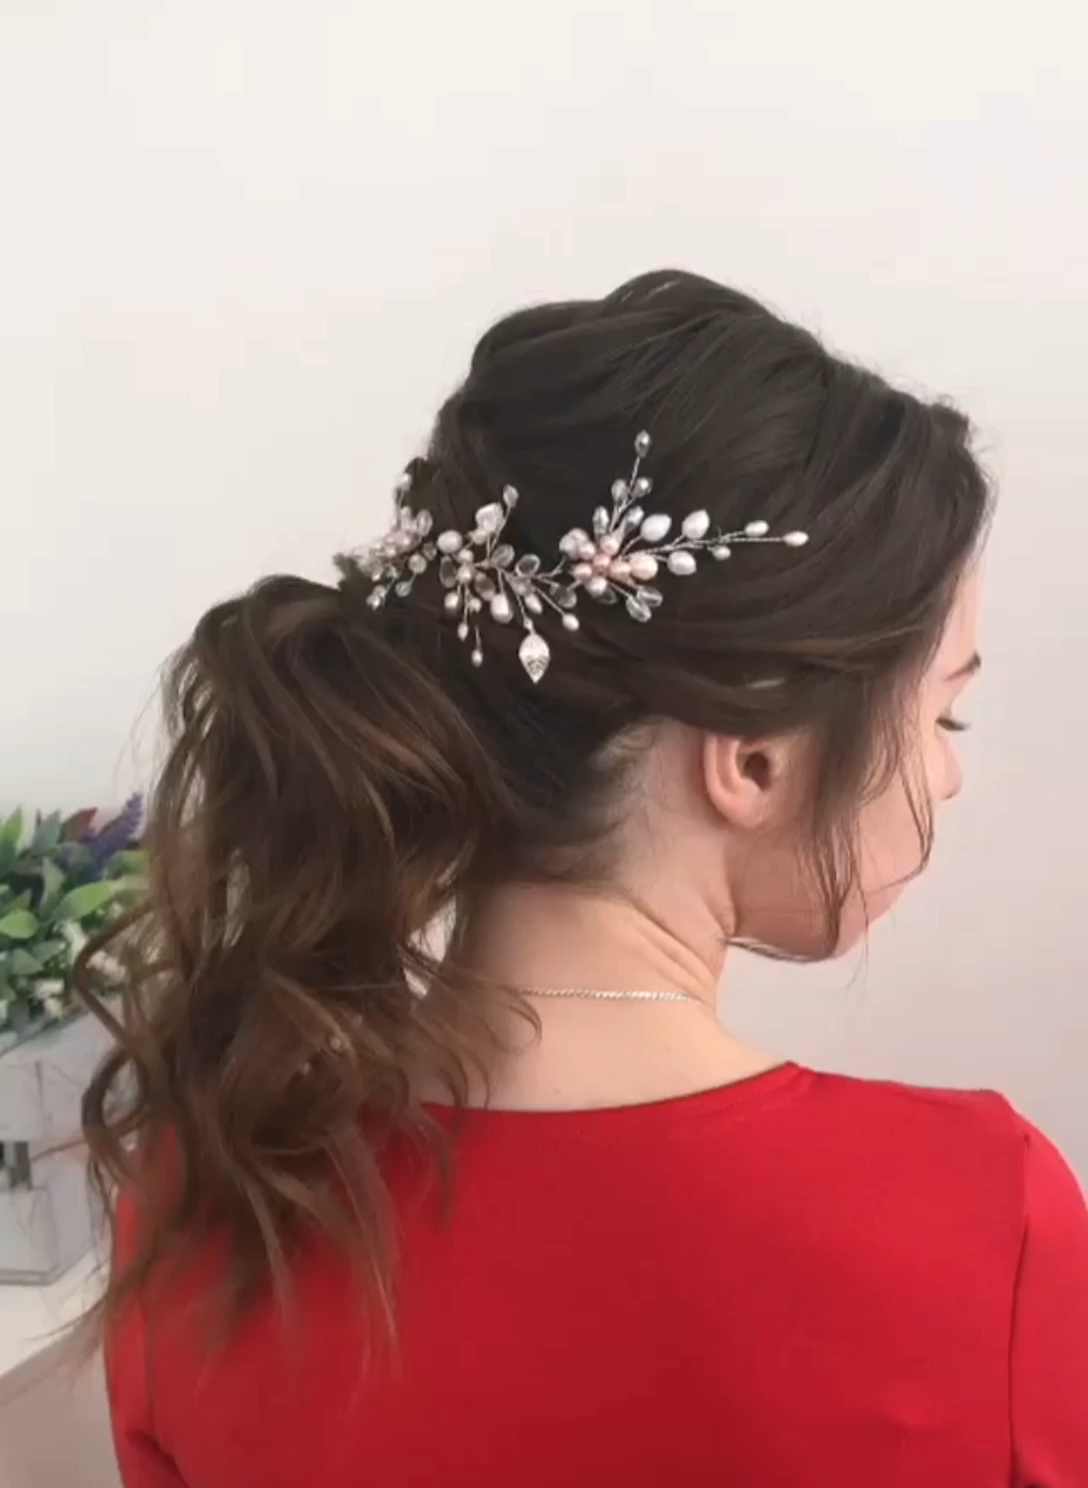 Pearl and crystal hair vine, Bridal hair vine, Wedding hair vine, Blush pink hair accessories -   12 open hairstyles Straight ideas